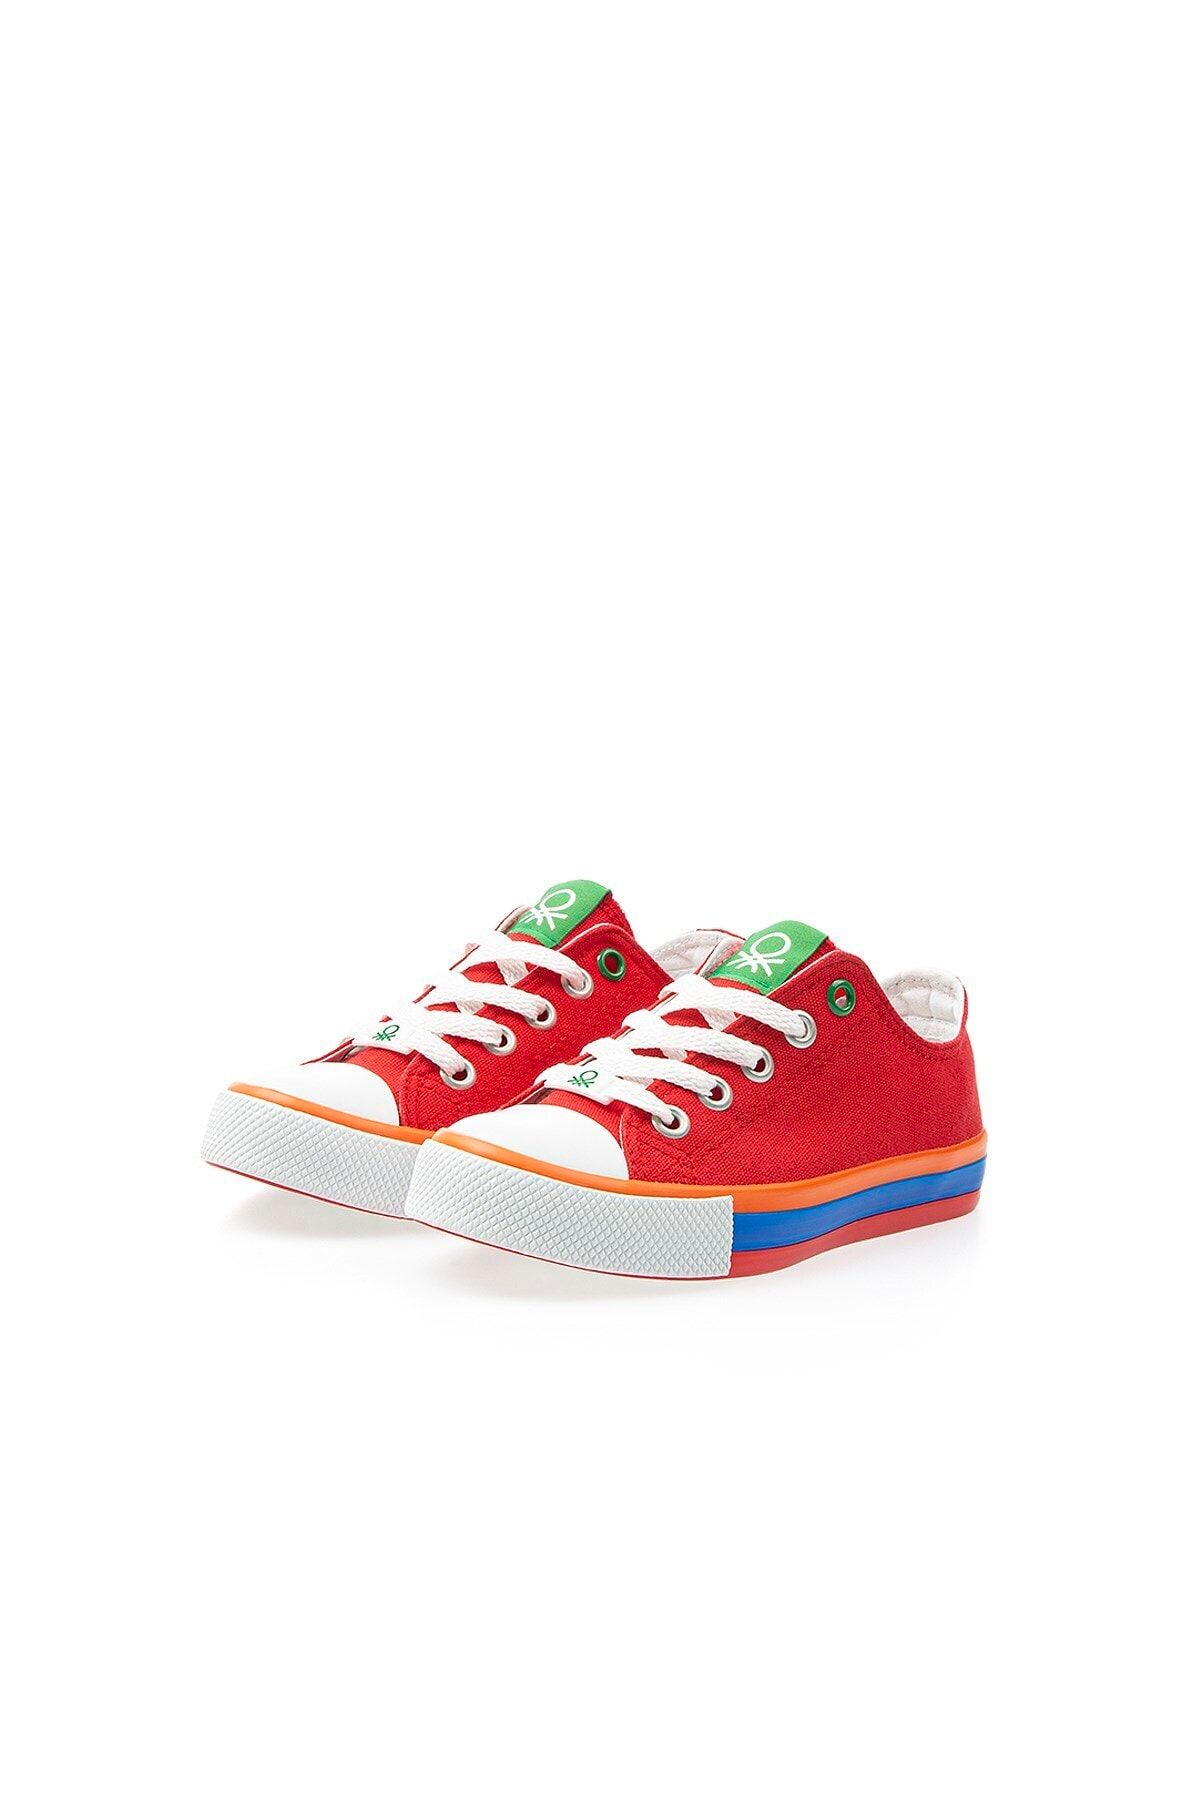 Benetton Çocuk Kırmızı Bağcıklı Spor Ayakkabı 30175